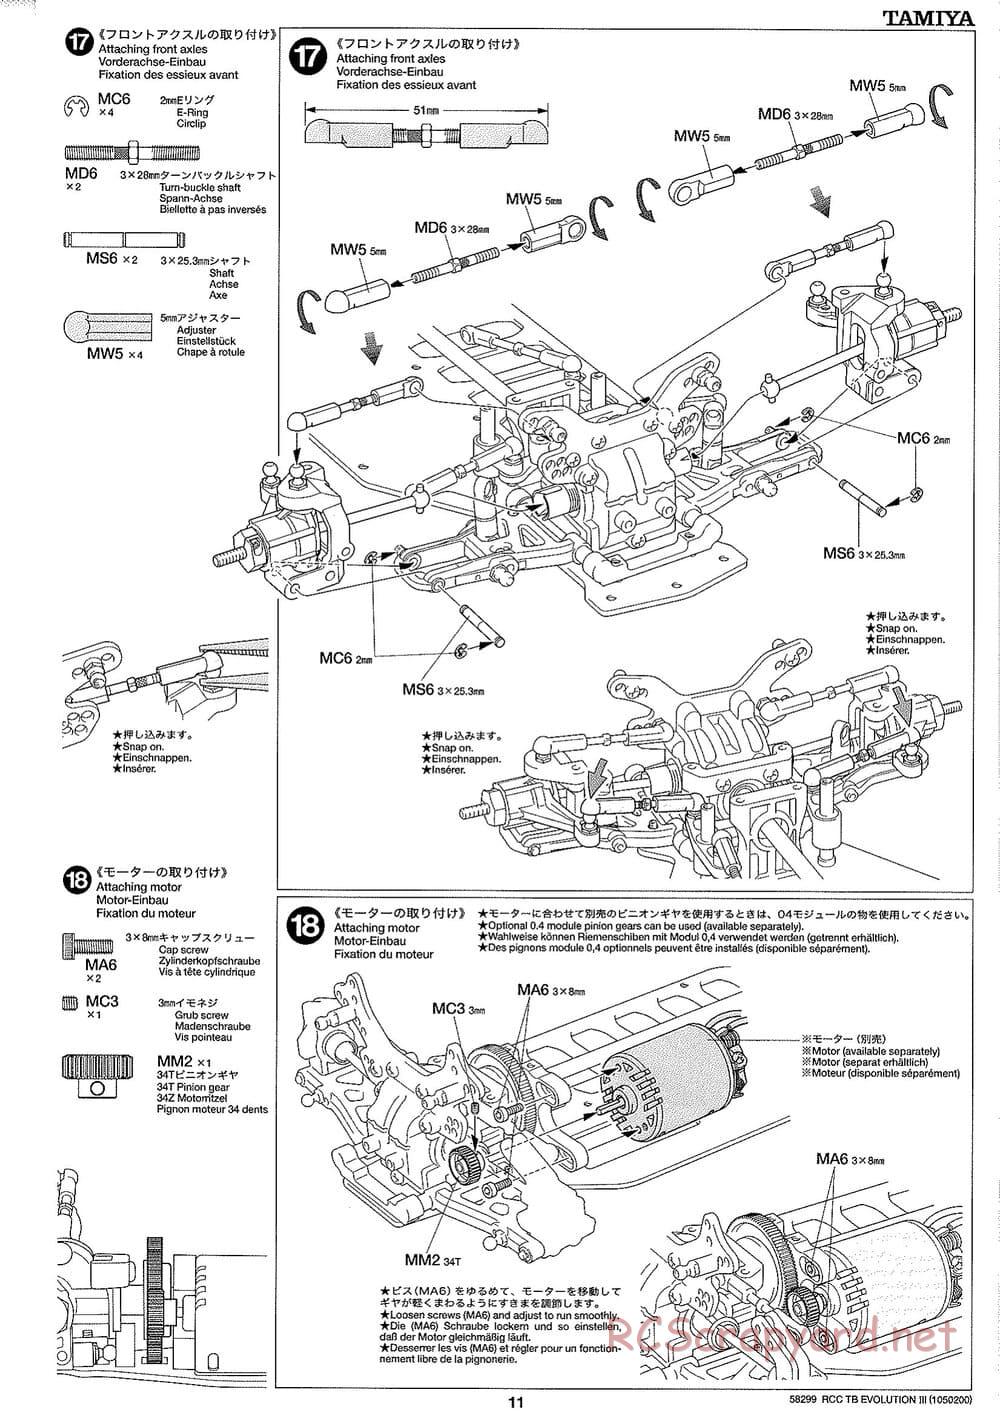 Tamiya - TB Evolution III Chassis - Manual - Page 12